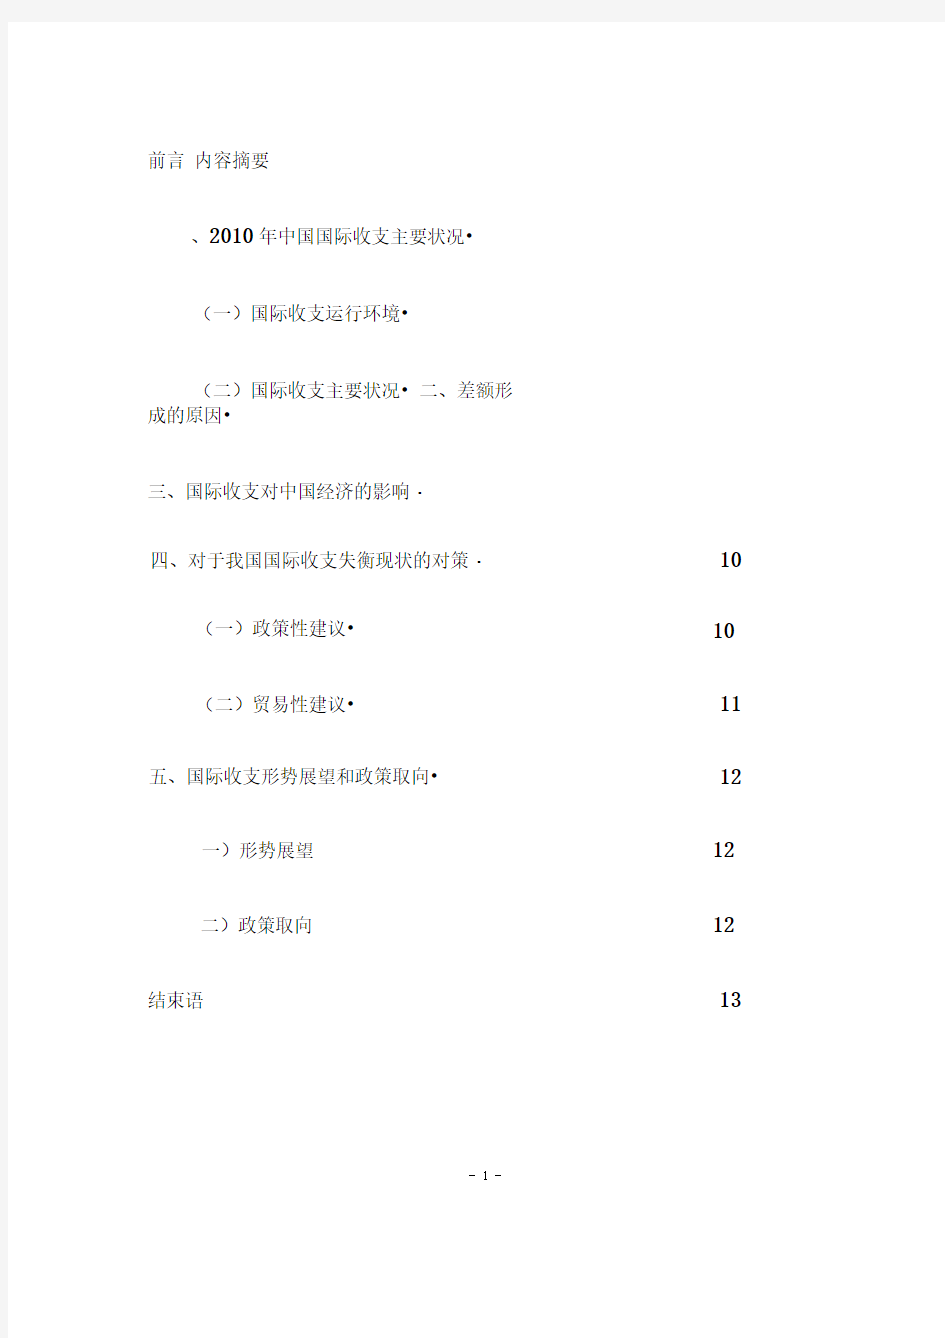 XXXX年中国国际收支平衡表分析报告